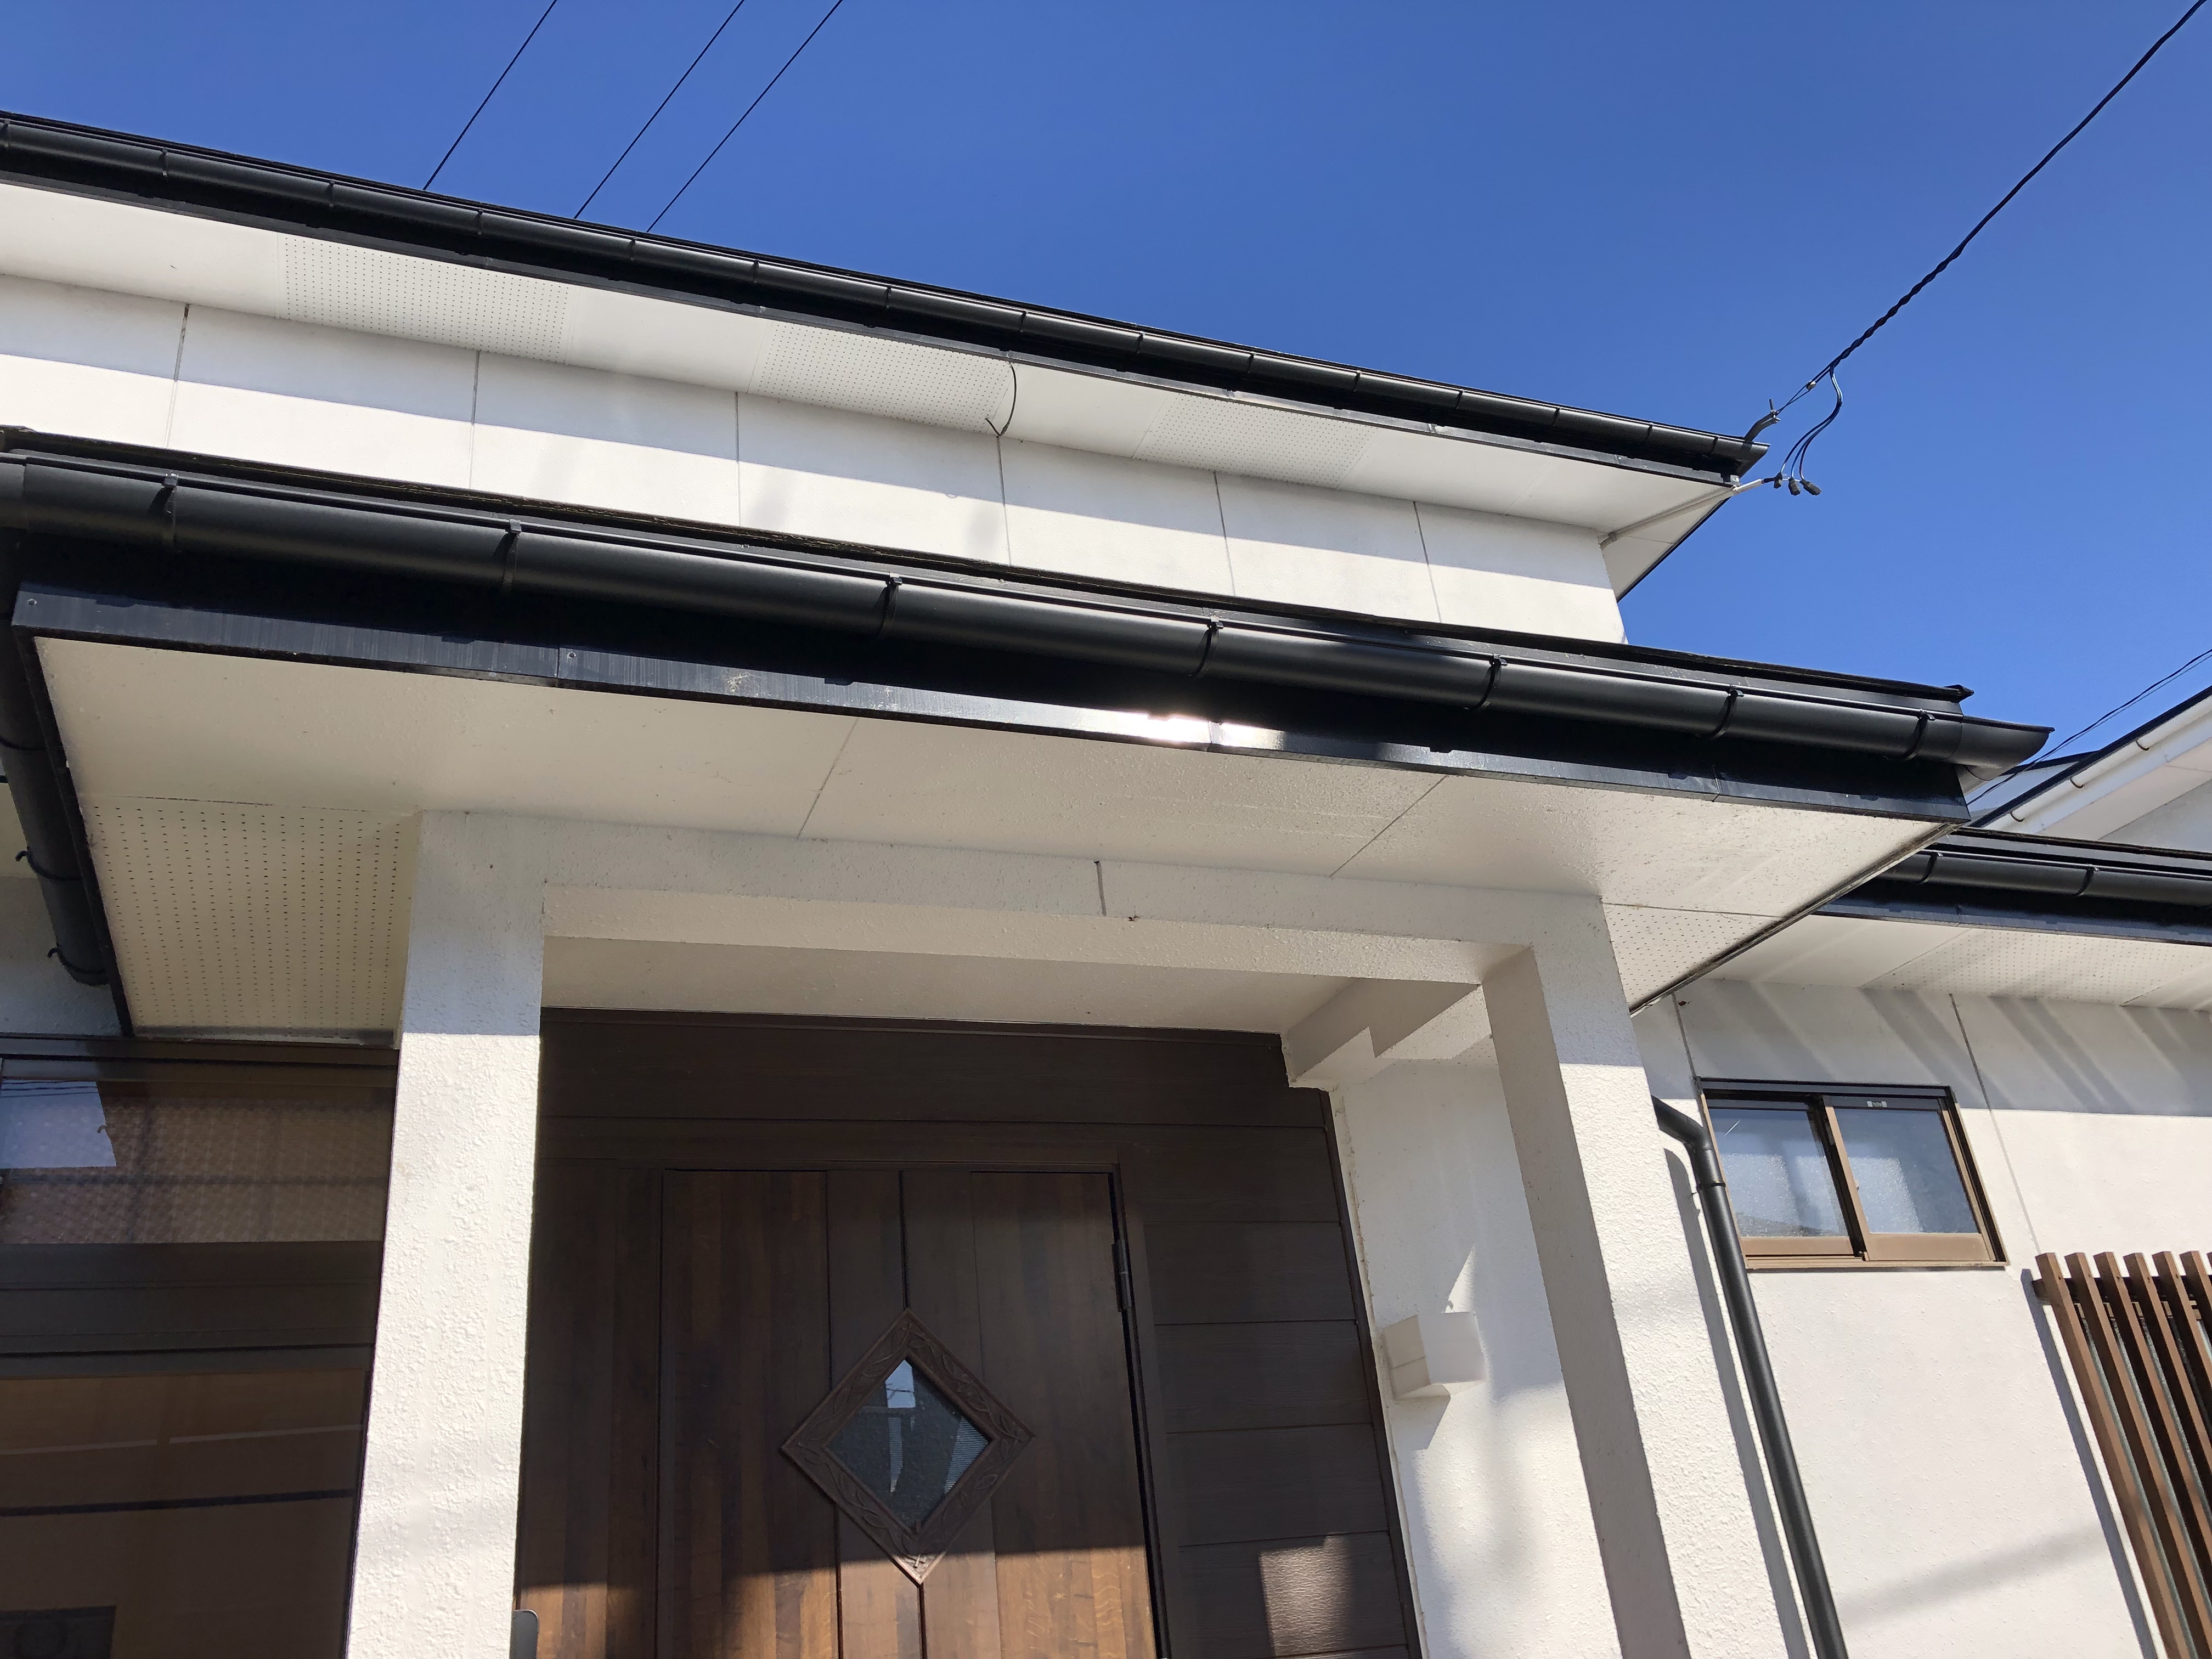 福島県会津若松市の住宅で、雪で壊れた雨樋を修理した屋根リフォーム事例